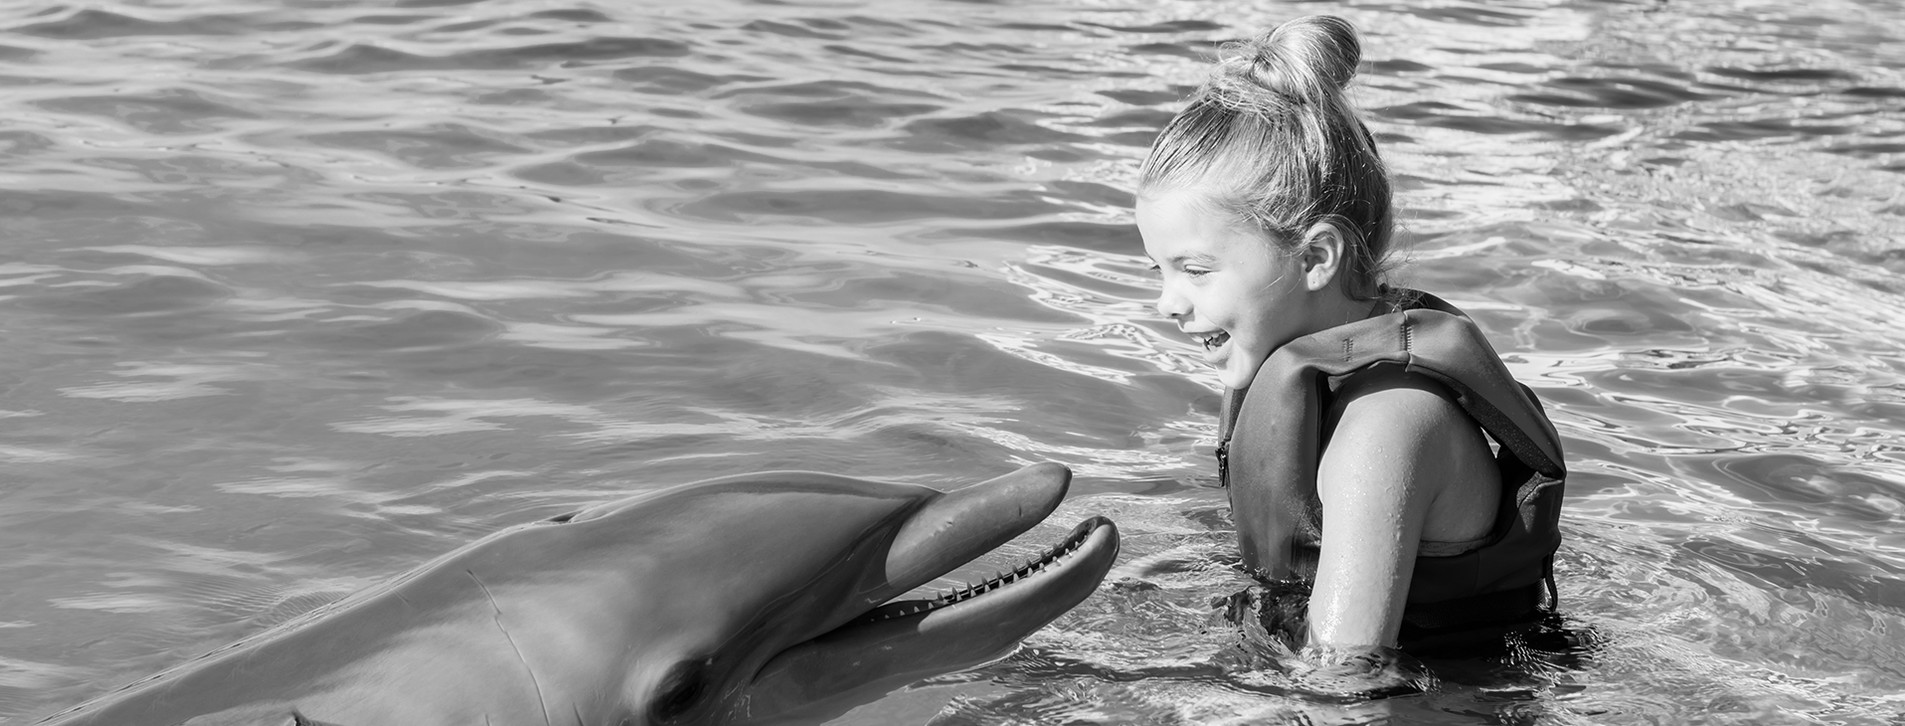 Фото 1 - Знакомство с дельфинами